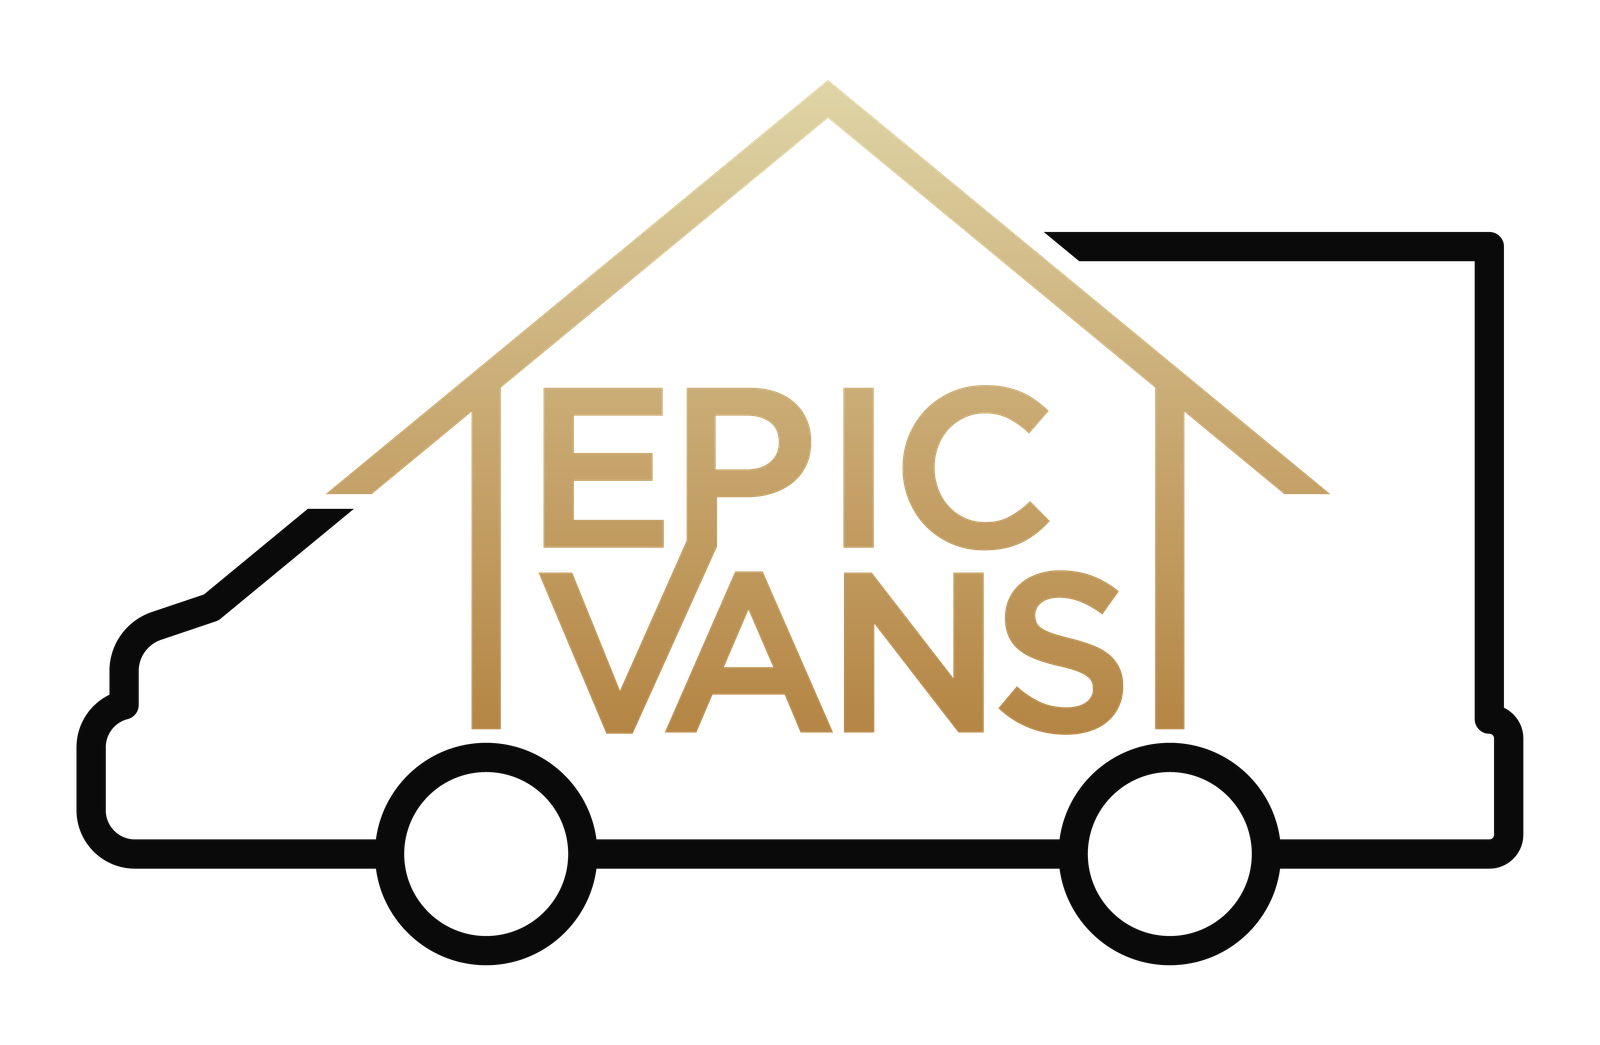 Epic Vans